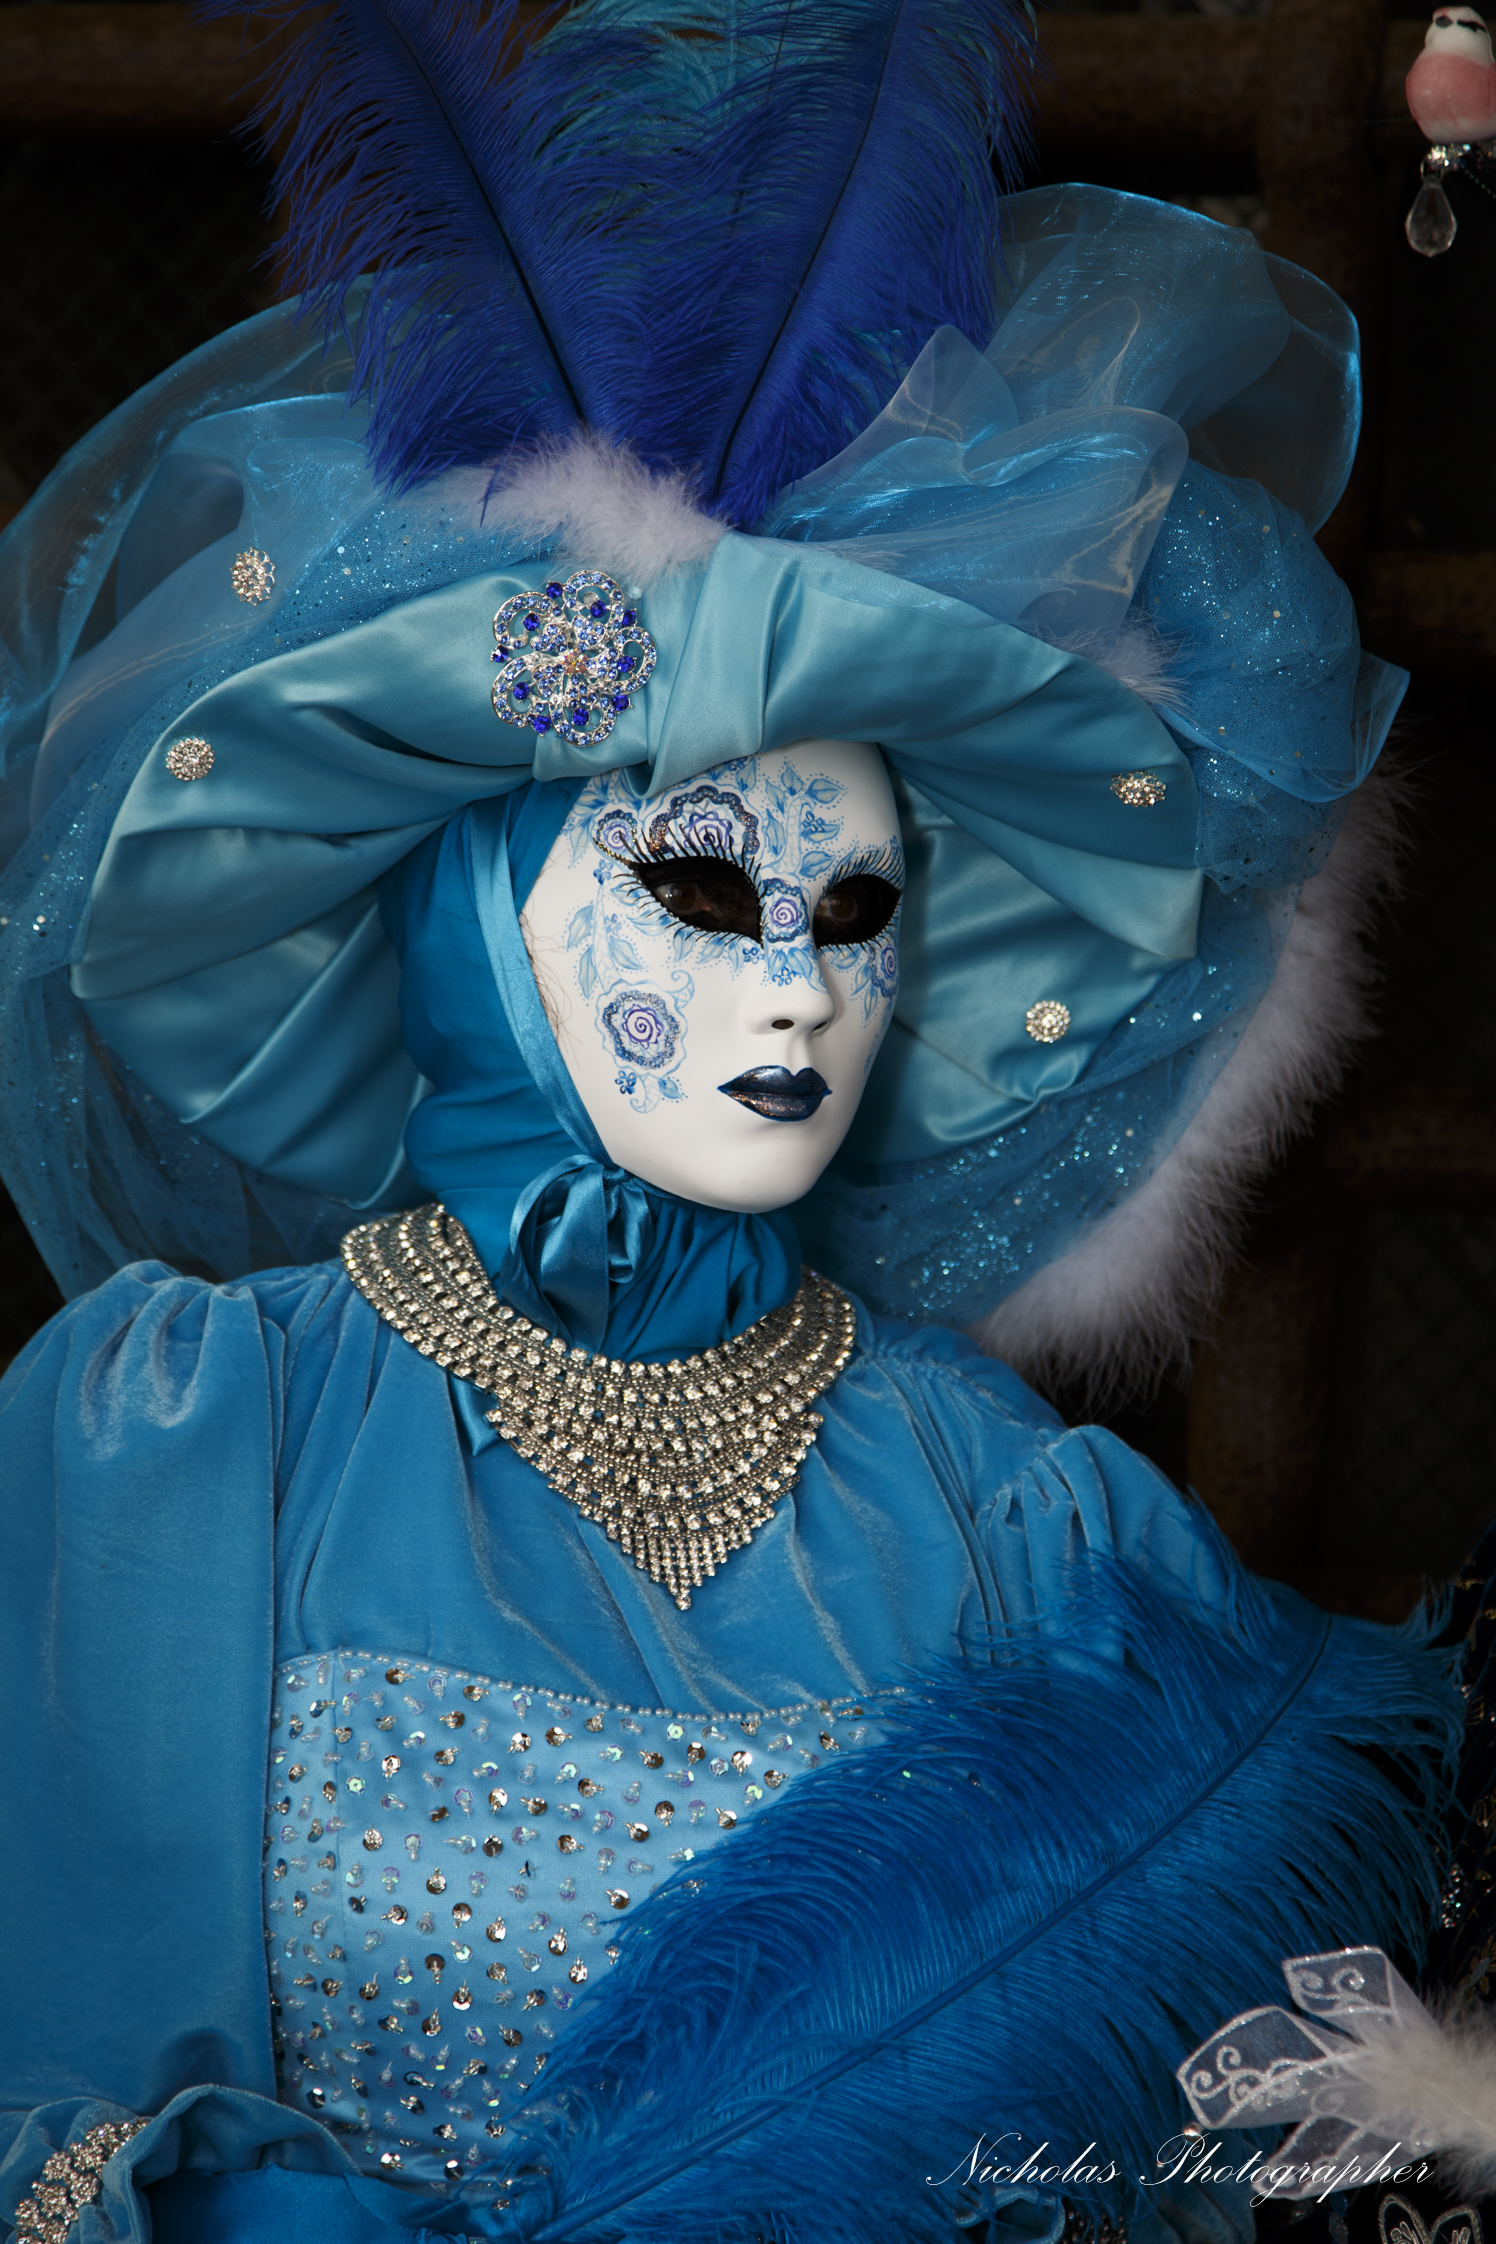 Venice Carnival 2015...